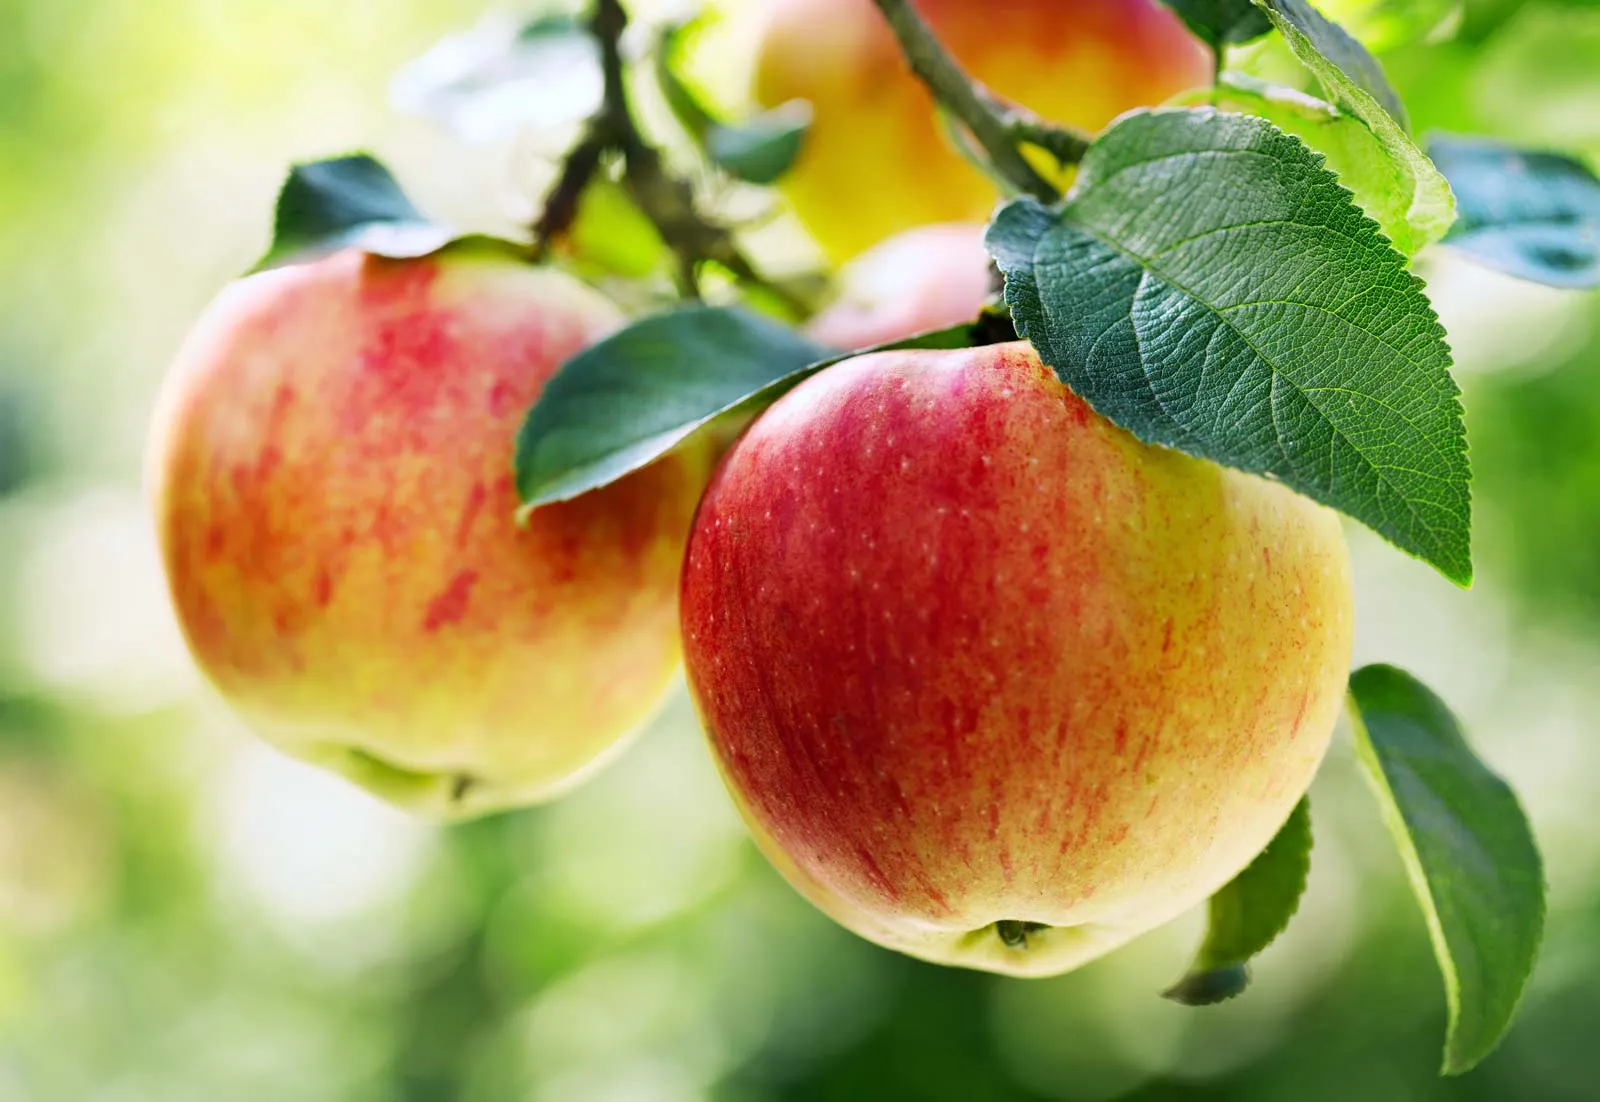 Εισαγωγή στην καλλιέργεια και άρδευση των καλλιεργειών μηλιάς